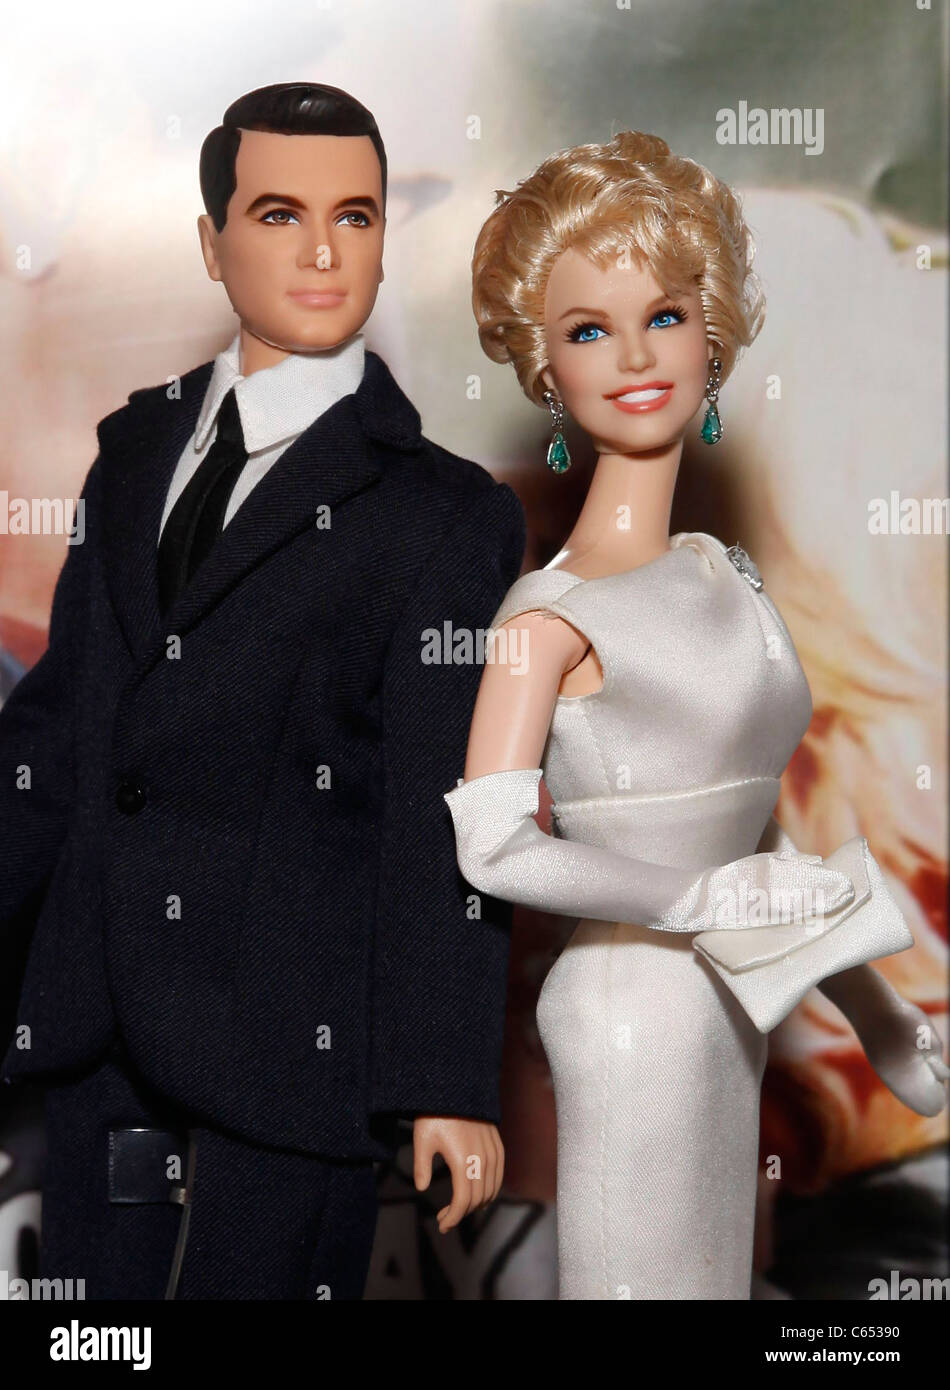 Mattel Rock Hudson e Doris Day 'Pillow Talk' Barbie e Ken Doll Giftset all'interno per il 2011 American International Toy Fair, il Javits Center di New York, NY Febbraio 14, 2011. Foto di: Michael Williams/Everett Collection Foto Stock